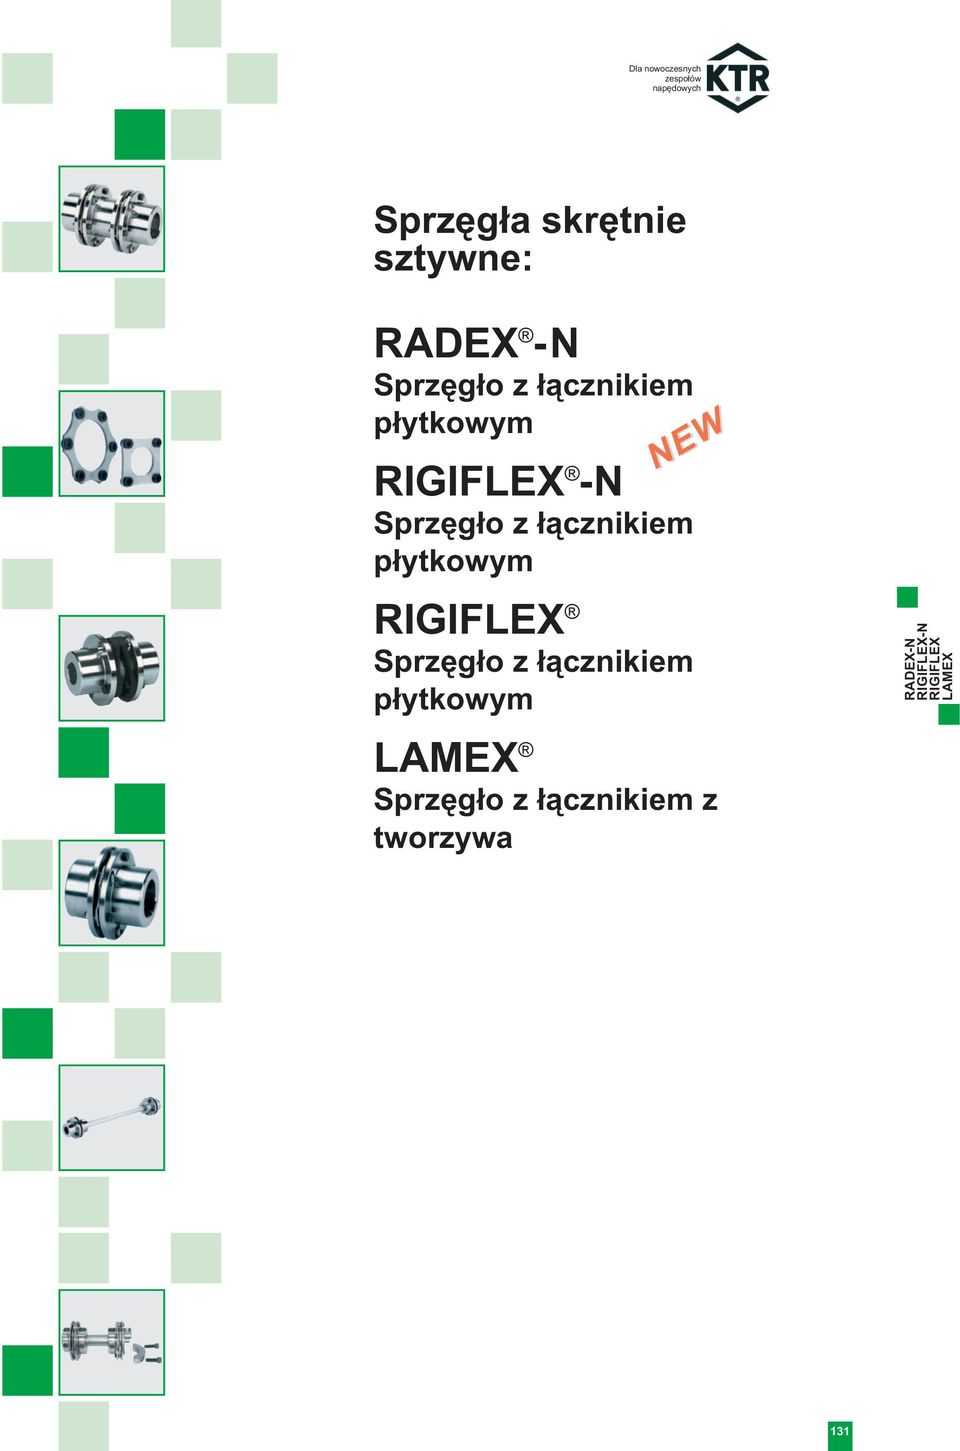 RIGIFLEX Sprzęgło z łącznikiem płytkowym RADEX-N